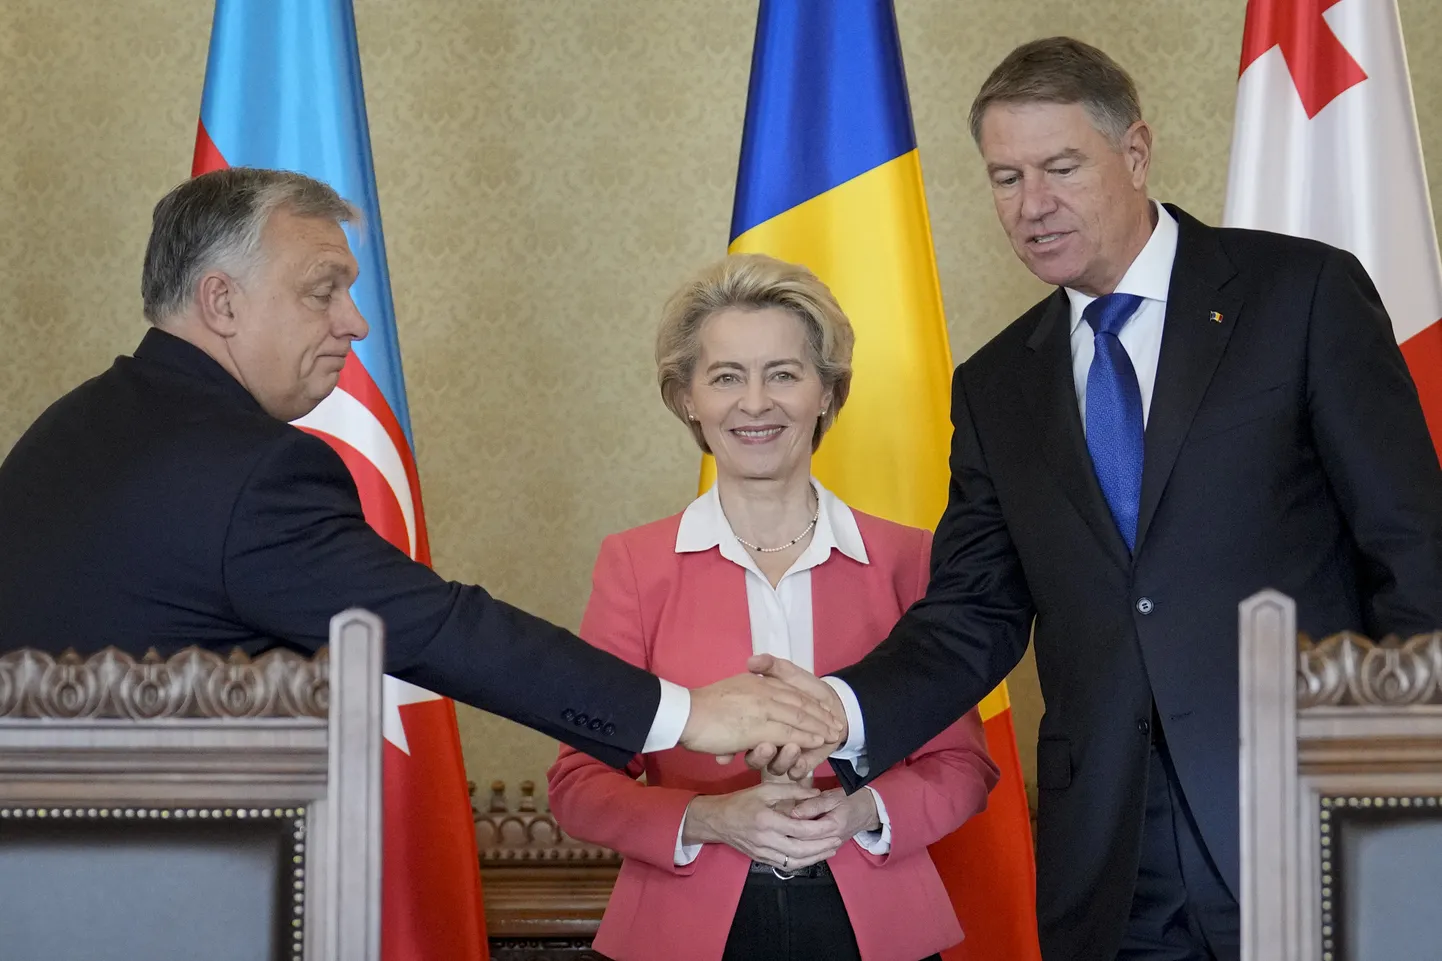 Премьер-министр Венгрии Виктор Орбан пожимает руку президенту Румынии Клаусу Йоханнису, а председатель Европейской комиссии Урсула фон дер Ляйен улыбается в президентском дворце Котрочени в Бухаресте, Румыния, в субботу, 17 декабря 2022 года. Сегодня Венгрия - наиболее последовательный противник скорейшего вступления Украины в НАТО.